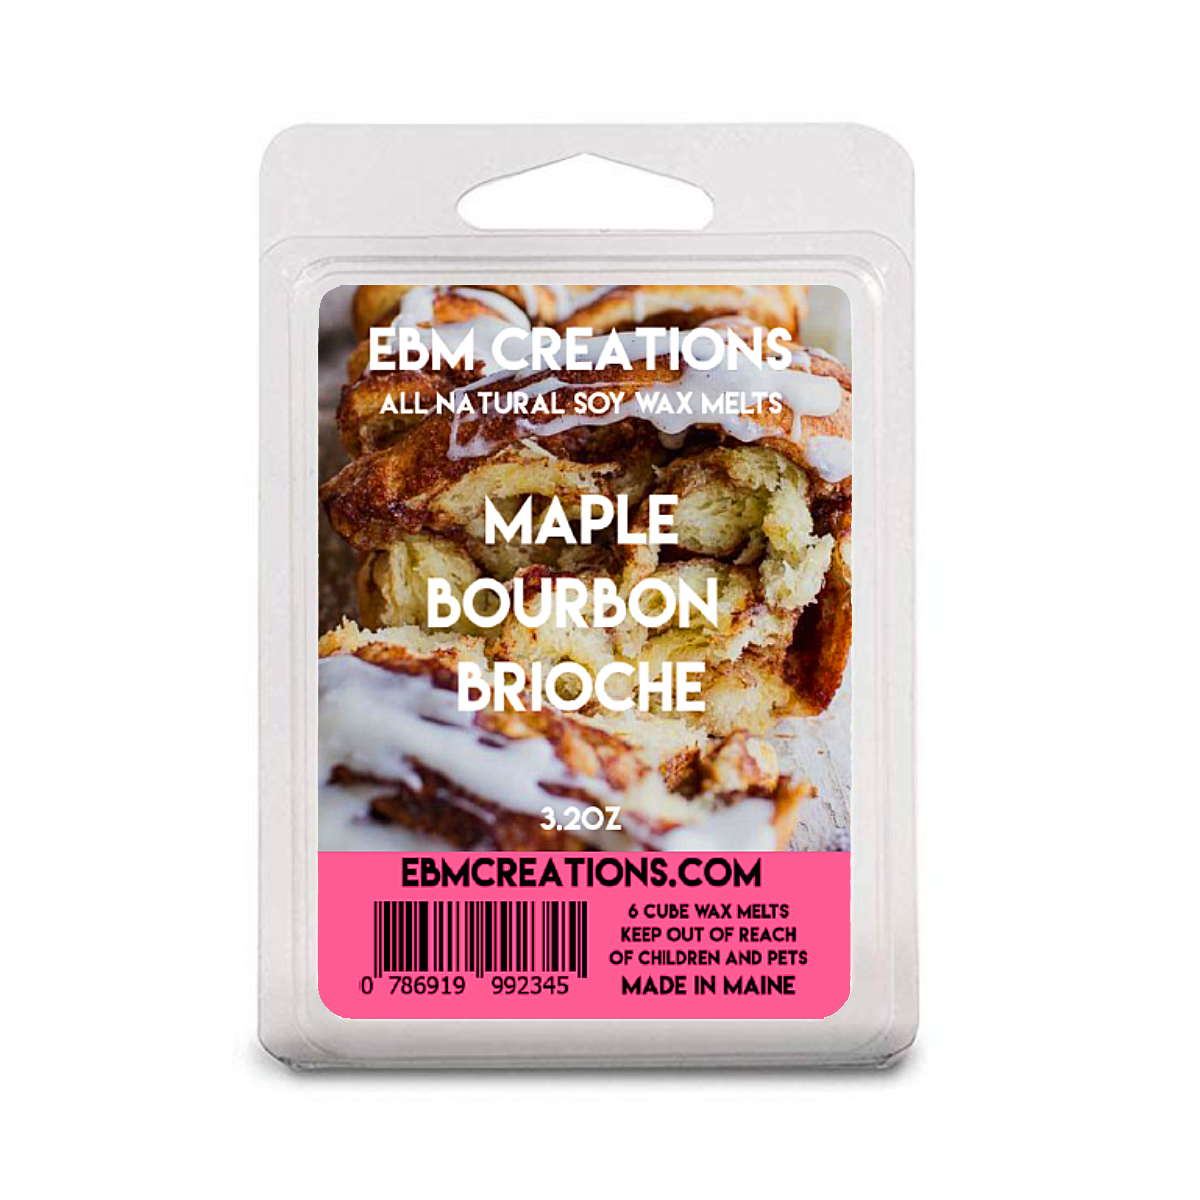 Maple Bourbon Brioche - 3.2 oz Clamshell